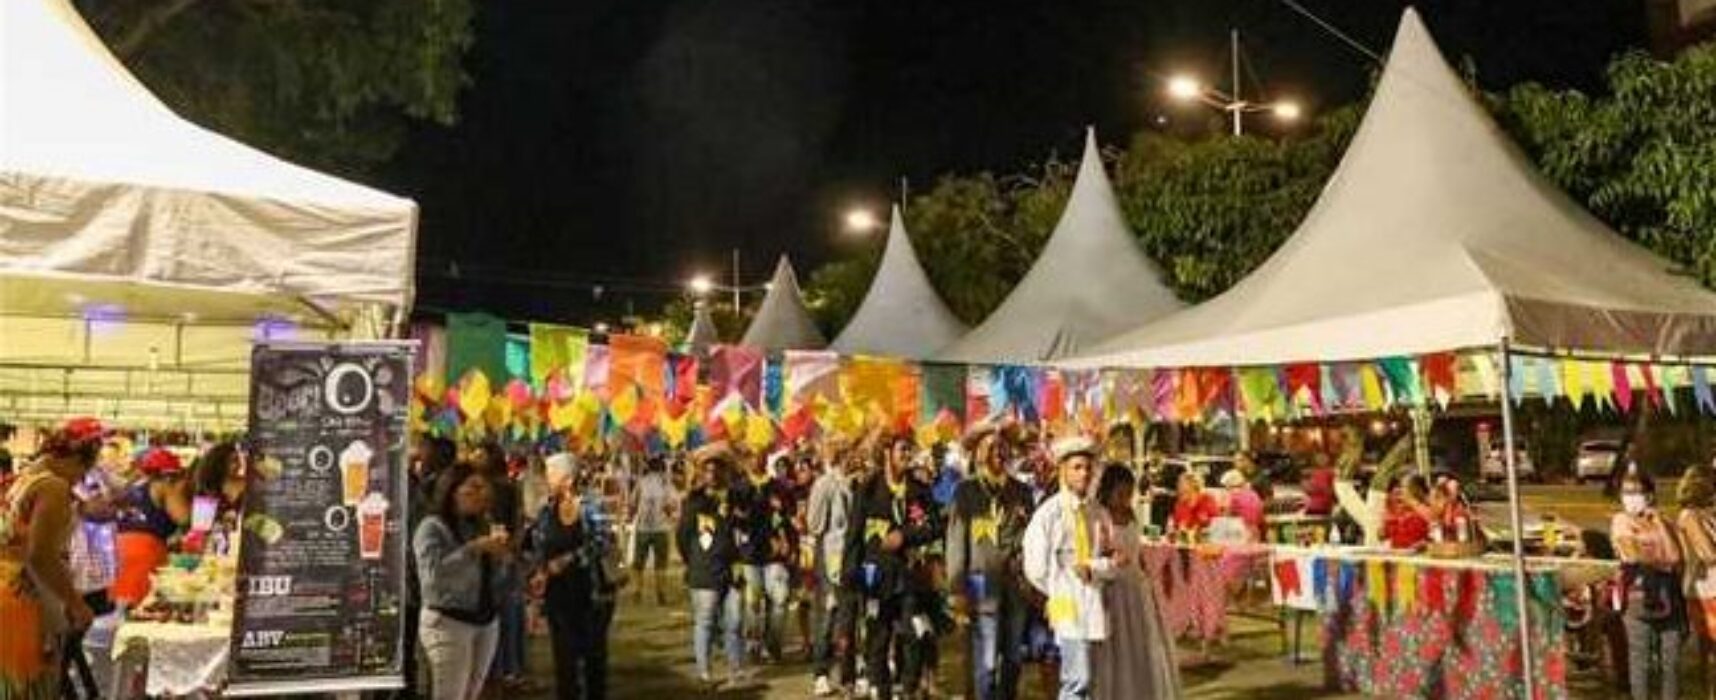 Viva Ilhéus: Vila Cultural Junina abre festejos em comemoração aos 488 anos da cidade